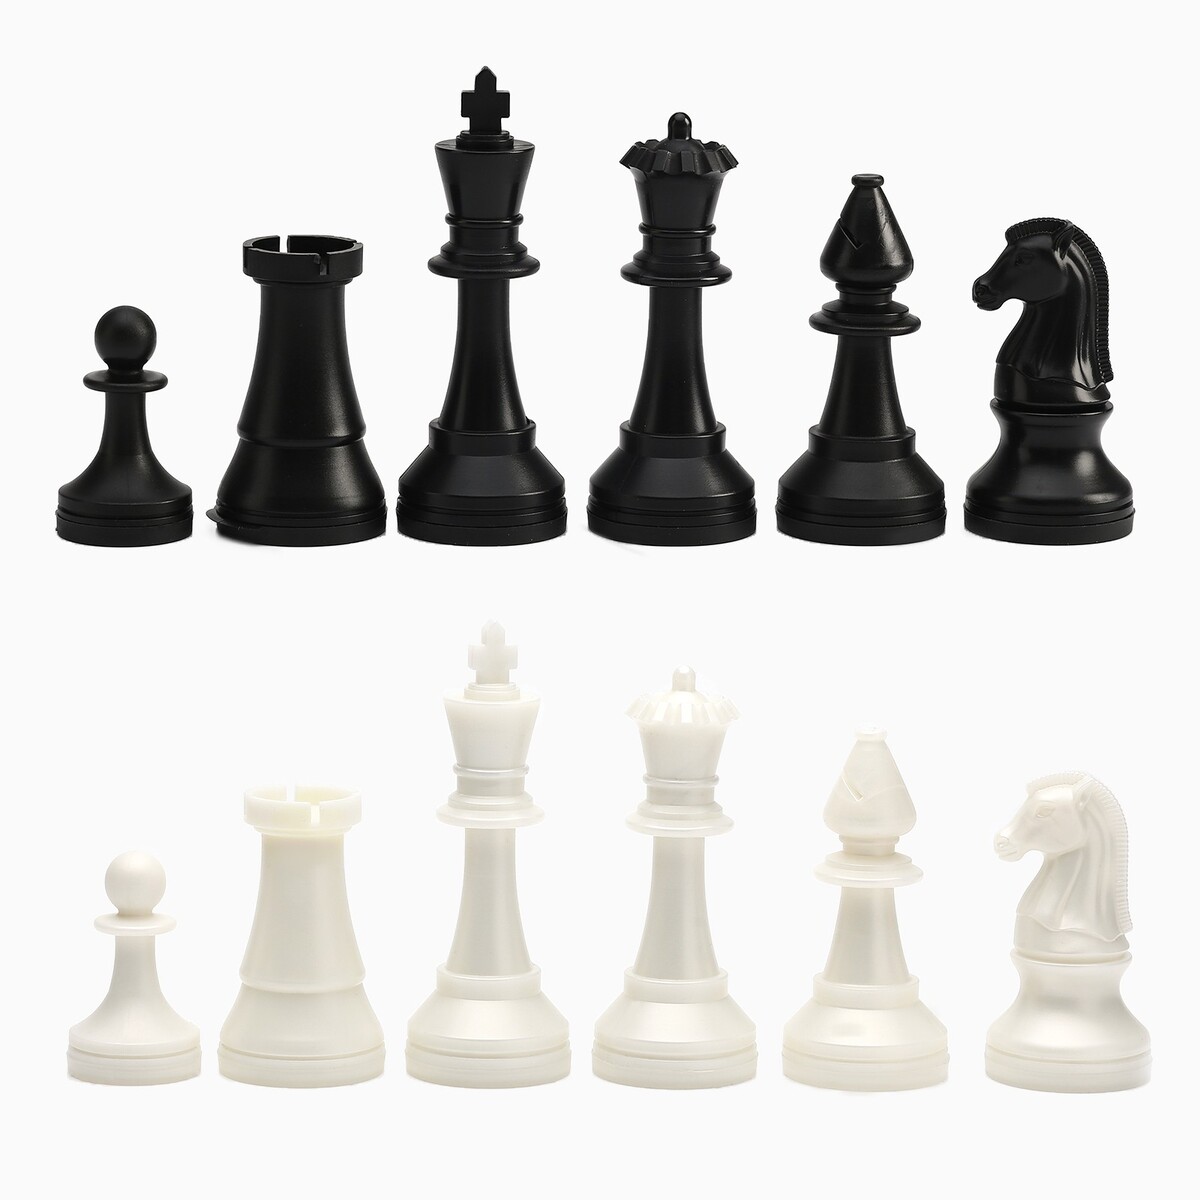 Шахматные фигуры турнирные, пластик, король h-10.5 см, пешка h-5 см шахматные фигуры пластик король h 9 5 см пешка h 4 5 см